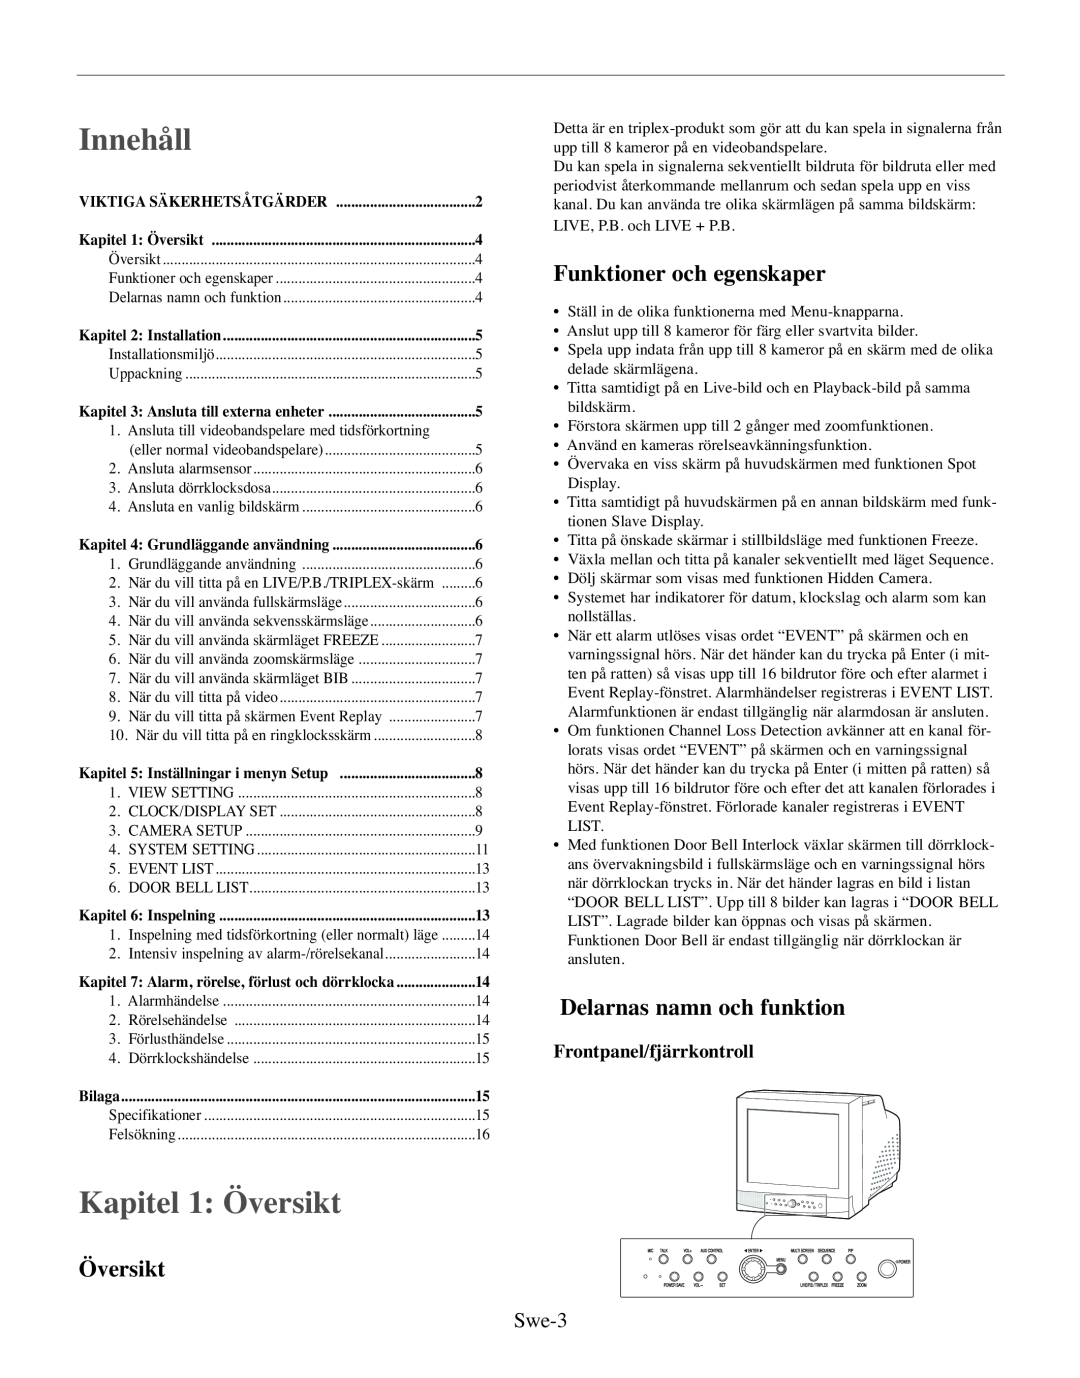 Samsung SMO-210TRP manual Innehåll, Kapitel 1 Översikt, Funktioner och egenskaper, Delarnas namn och funktion, Swe-3 